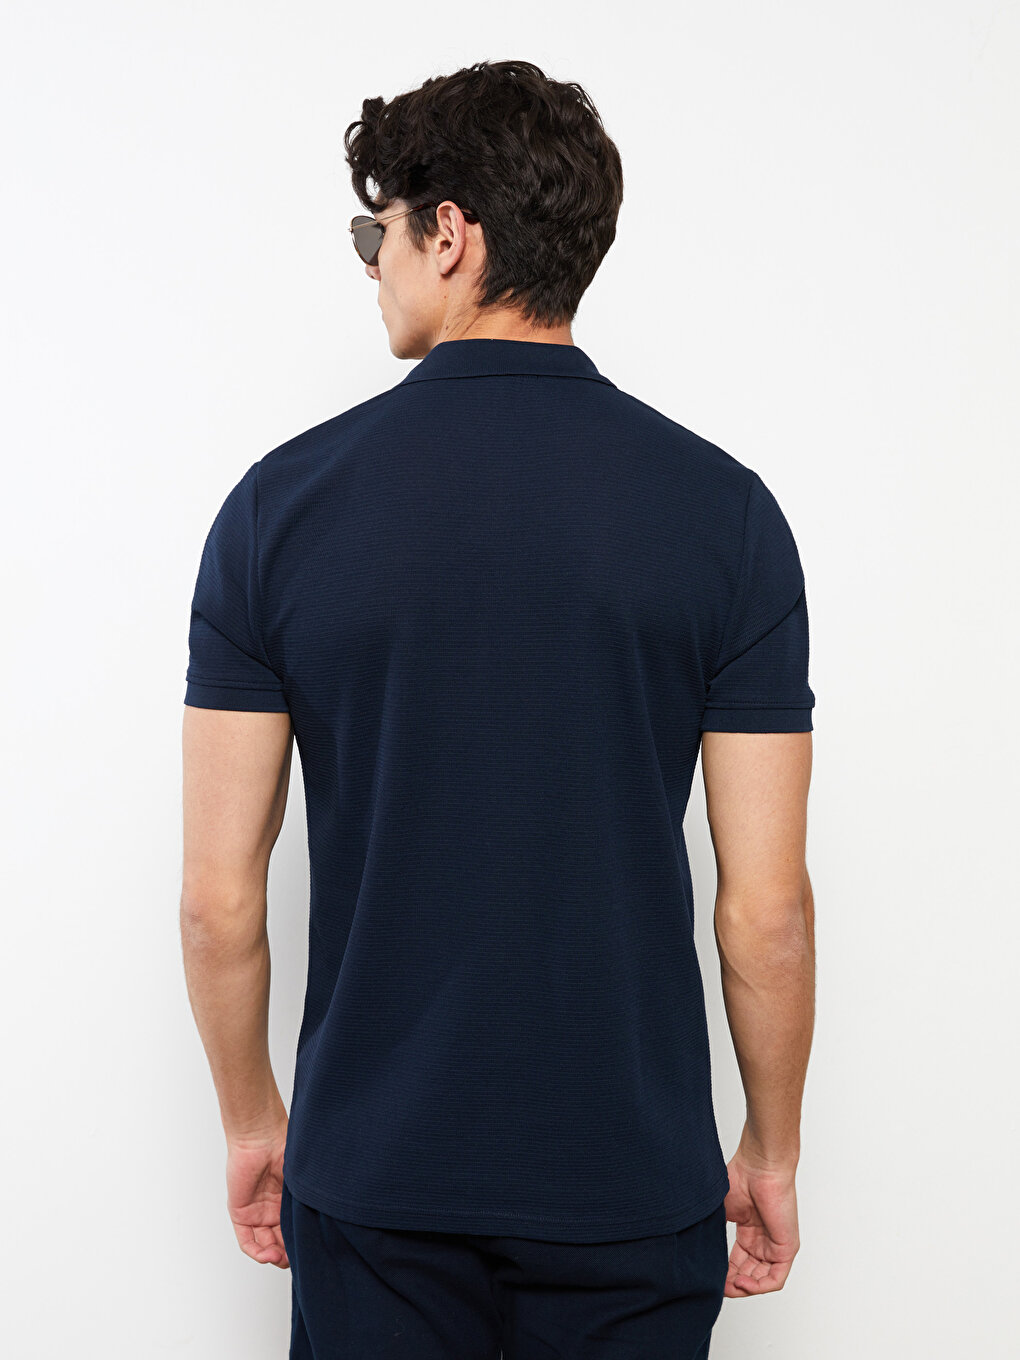 Polo Neck Short Sleeve Men's T-Shirt -S2G680Z8-RFH - S2G680Z8-RFH - LC ...